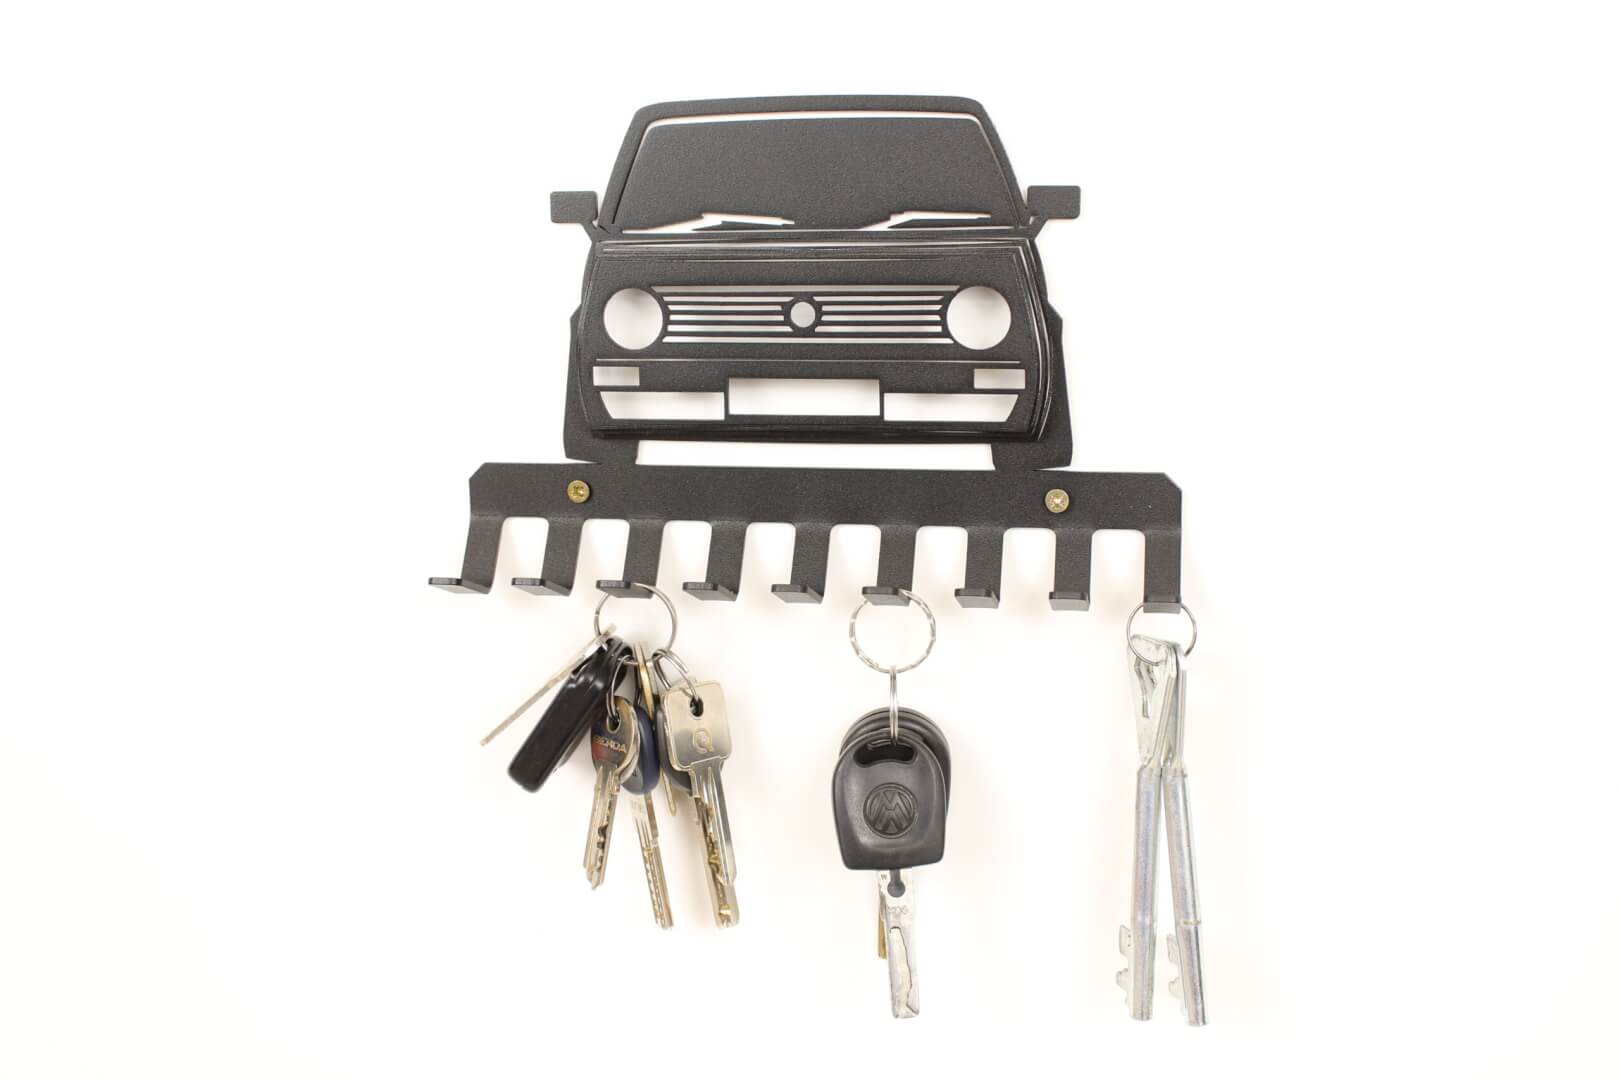 keys hanger for Vw golf Mk1 fans – 0008